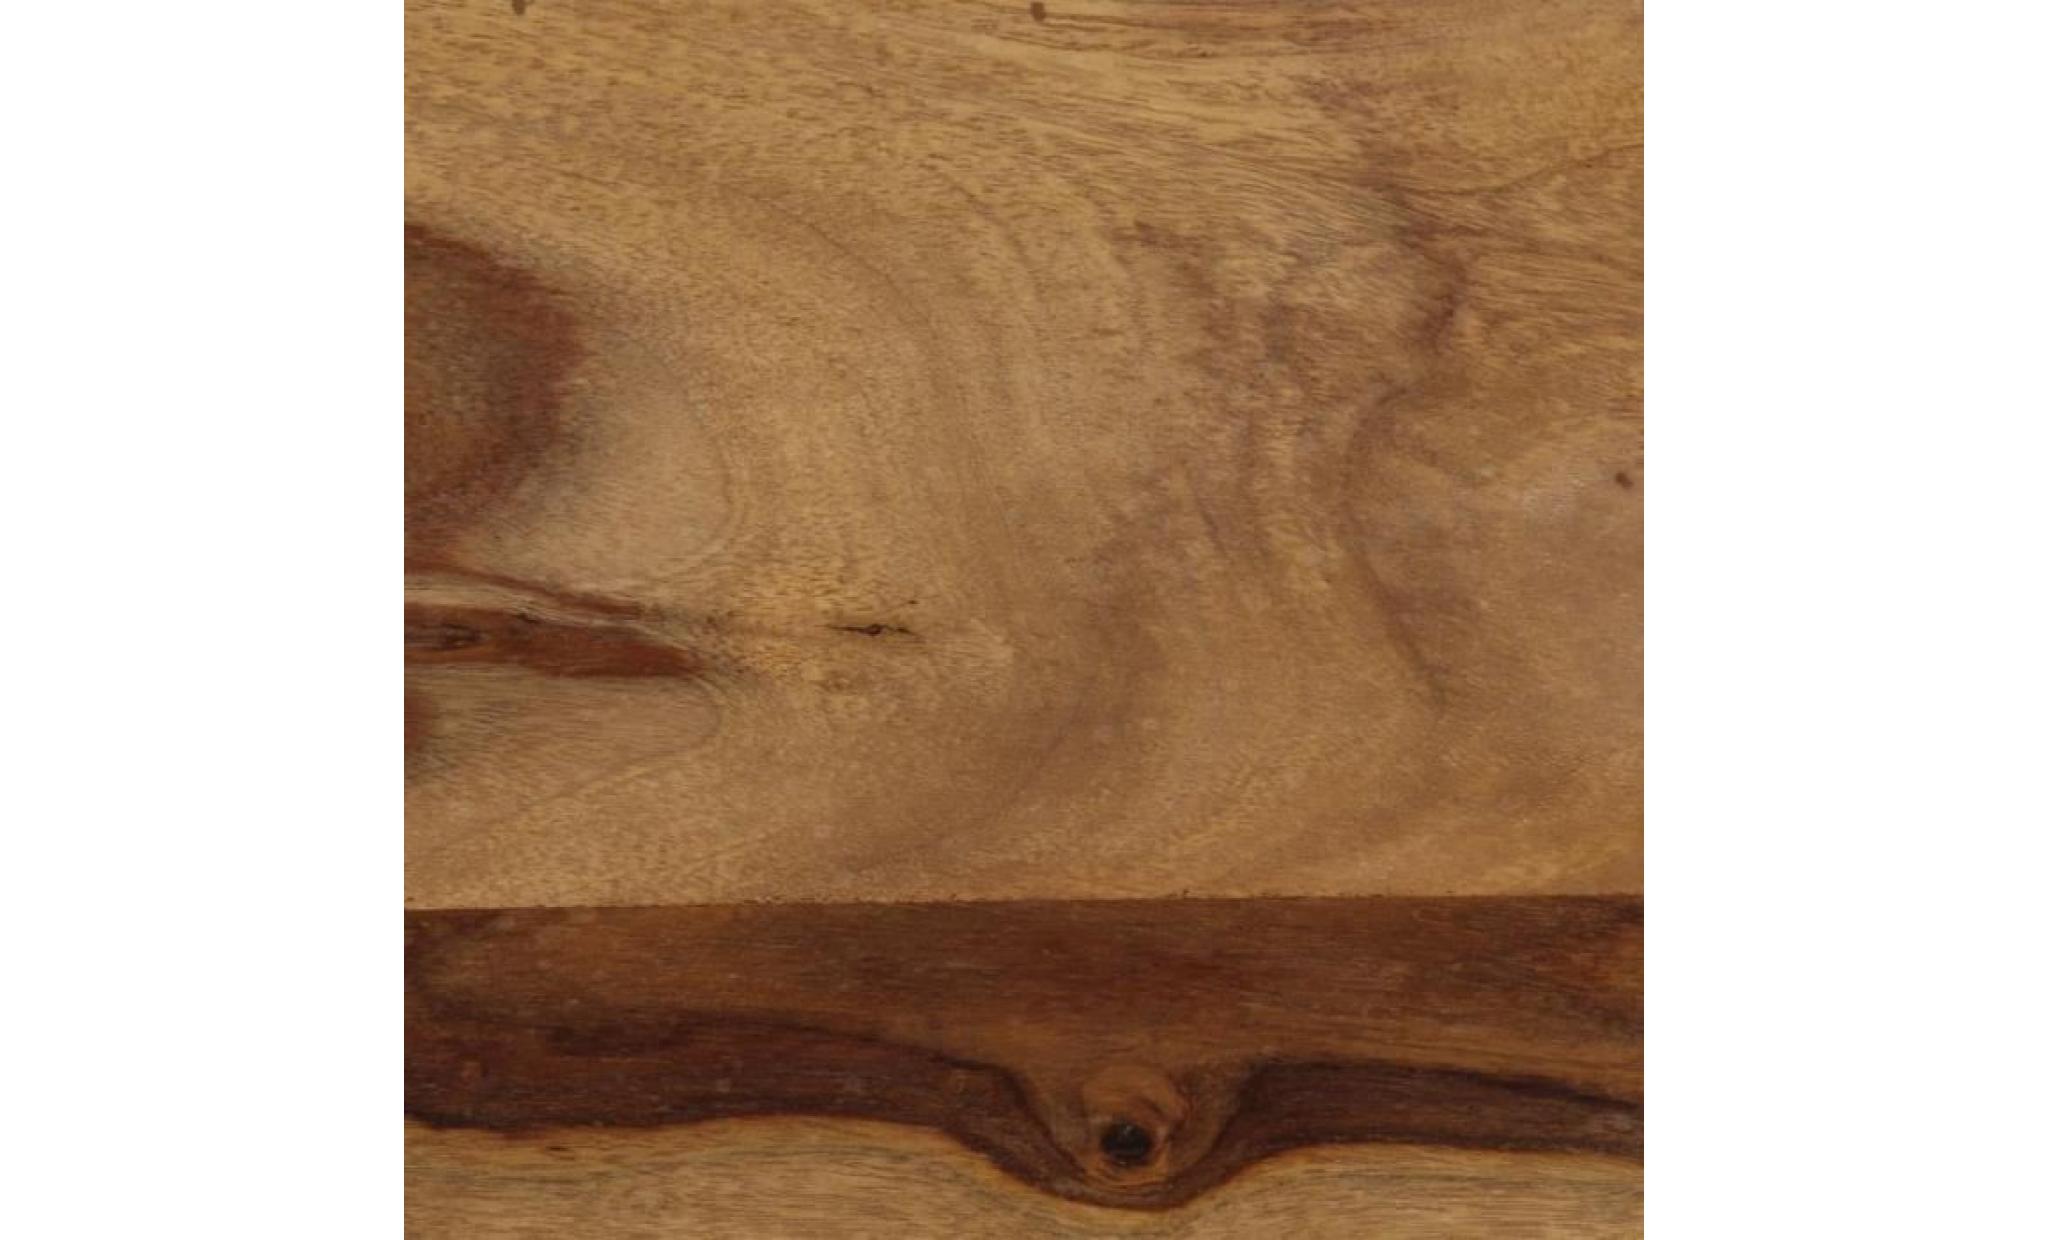 vidaxl table de bar bois de sesham massif 118 x 60 x 107 cm pas cher